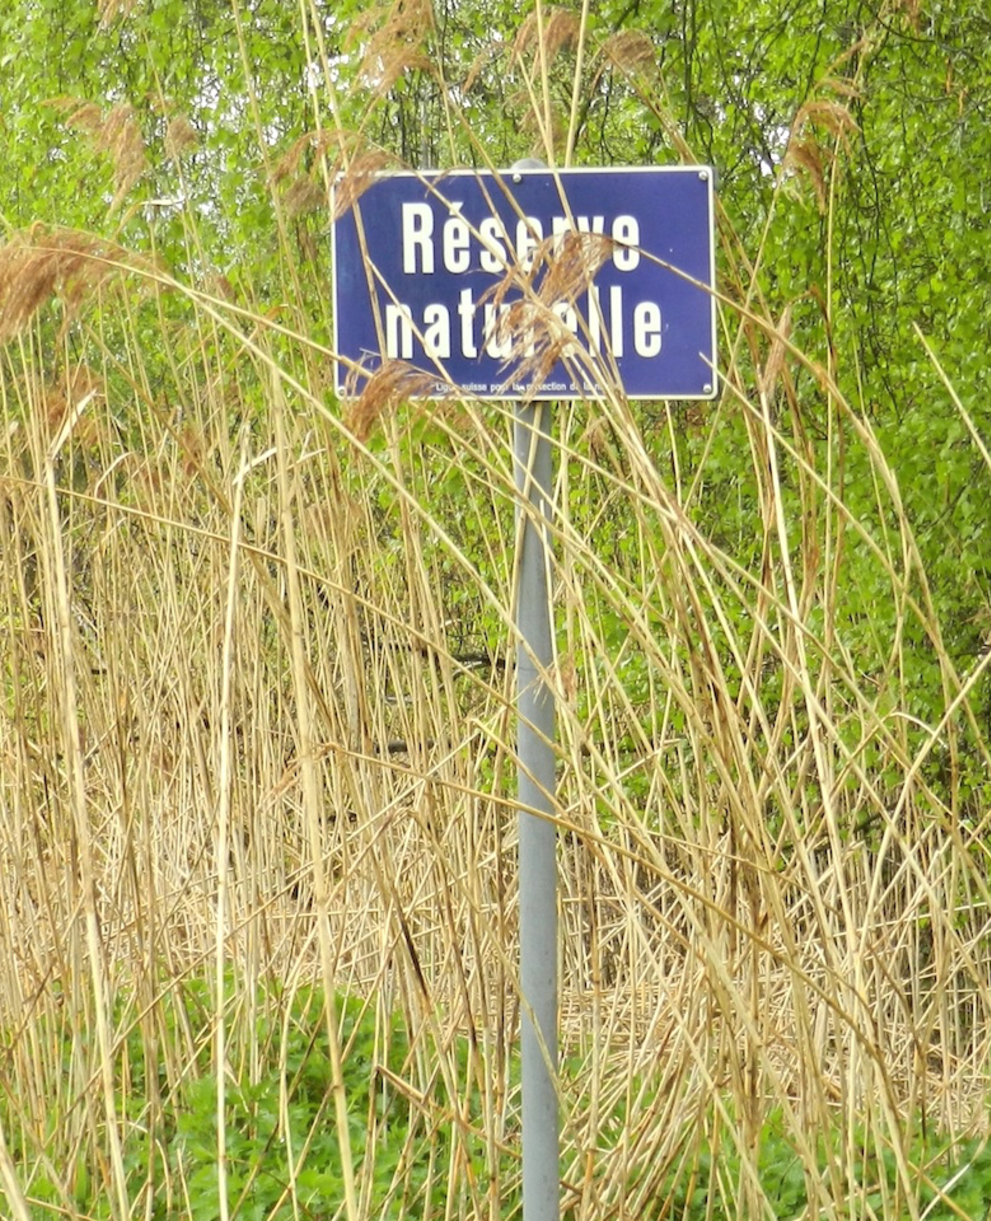 Tafel eines Naturschutzgebietes